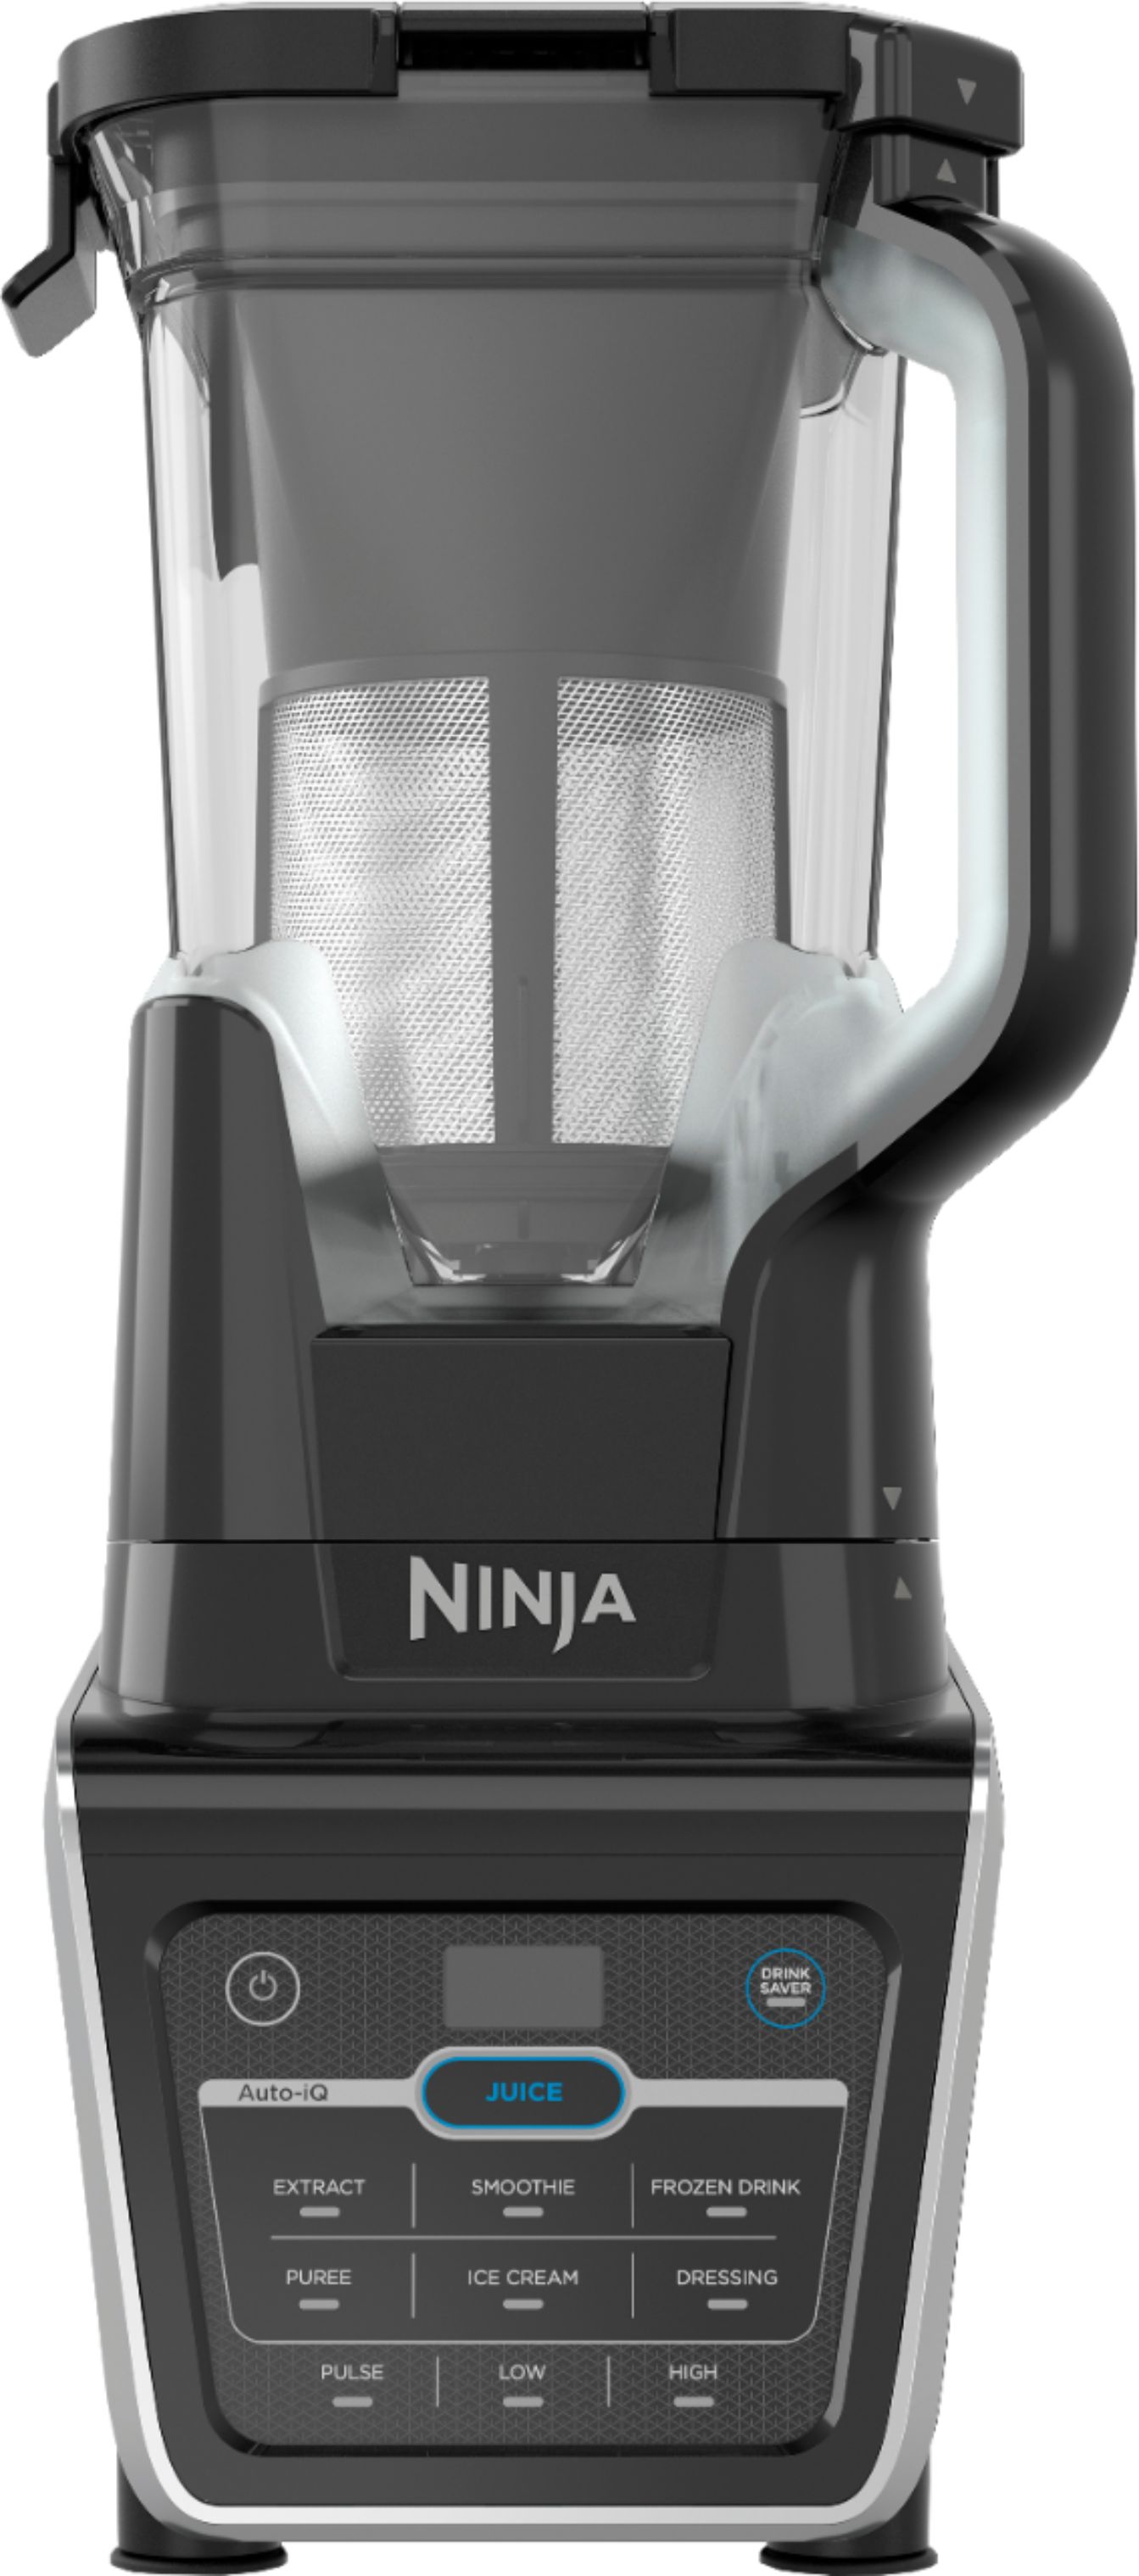 Ninja Professional Plus Blender with Auto iQ 1400 W 2.25 quart 4